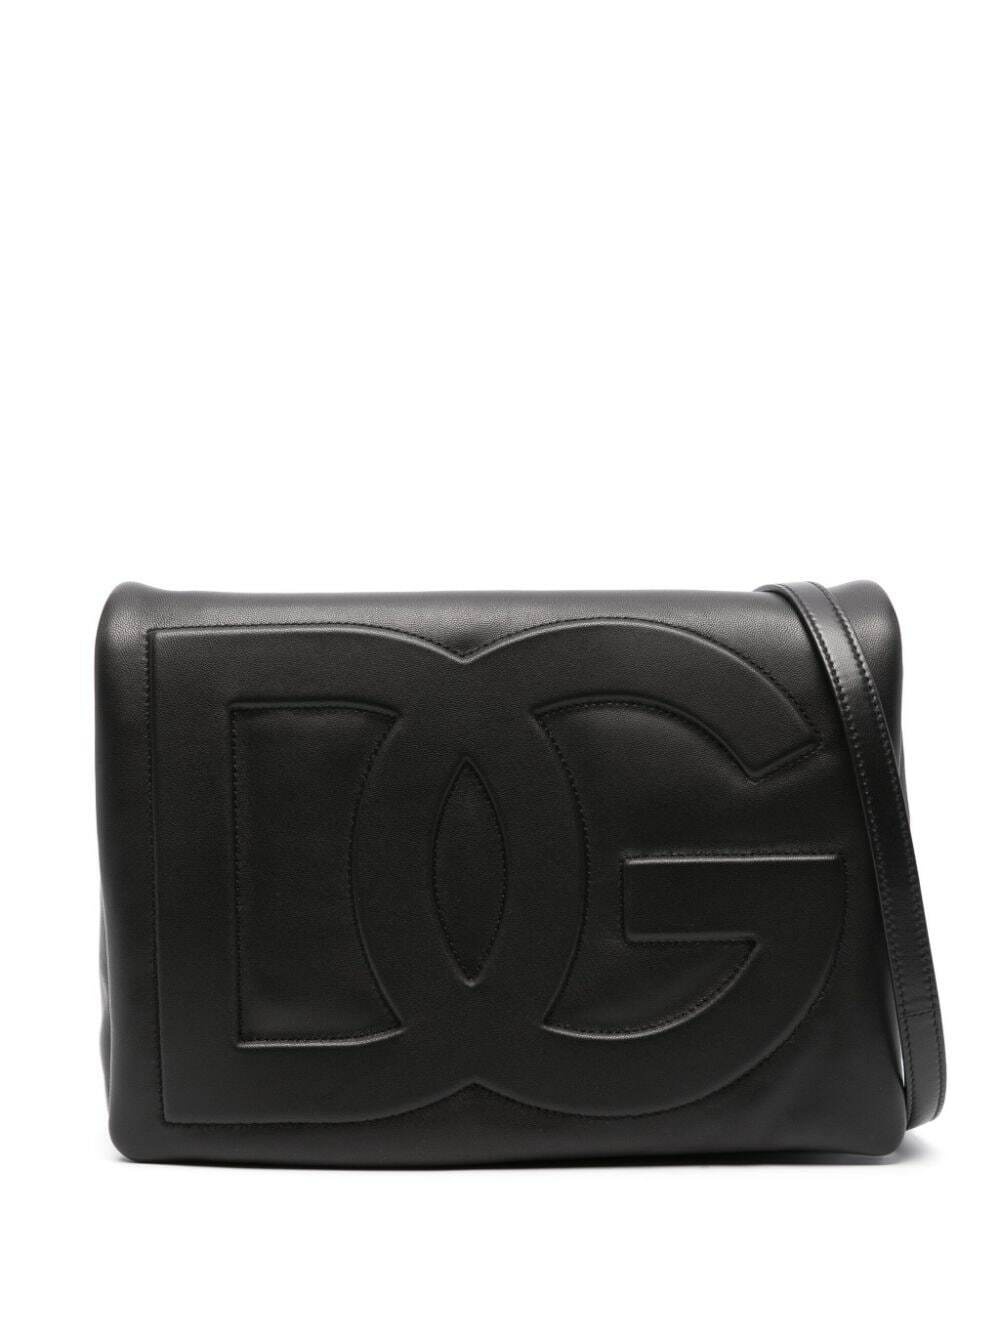 DOLCE & GABBANA - Dg Logo Leather Crossbody Bag Dolce & Gabbana